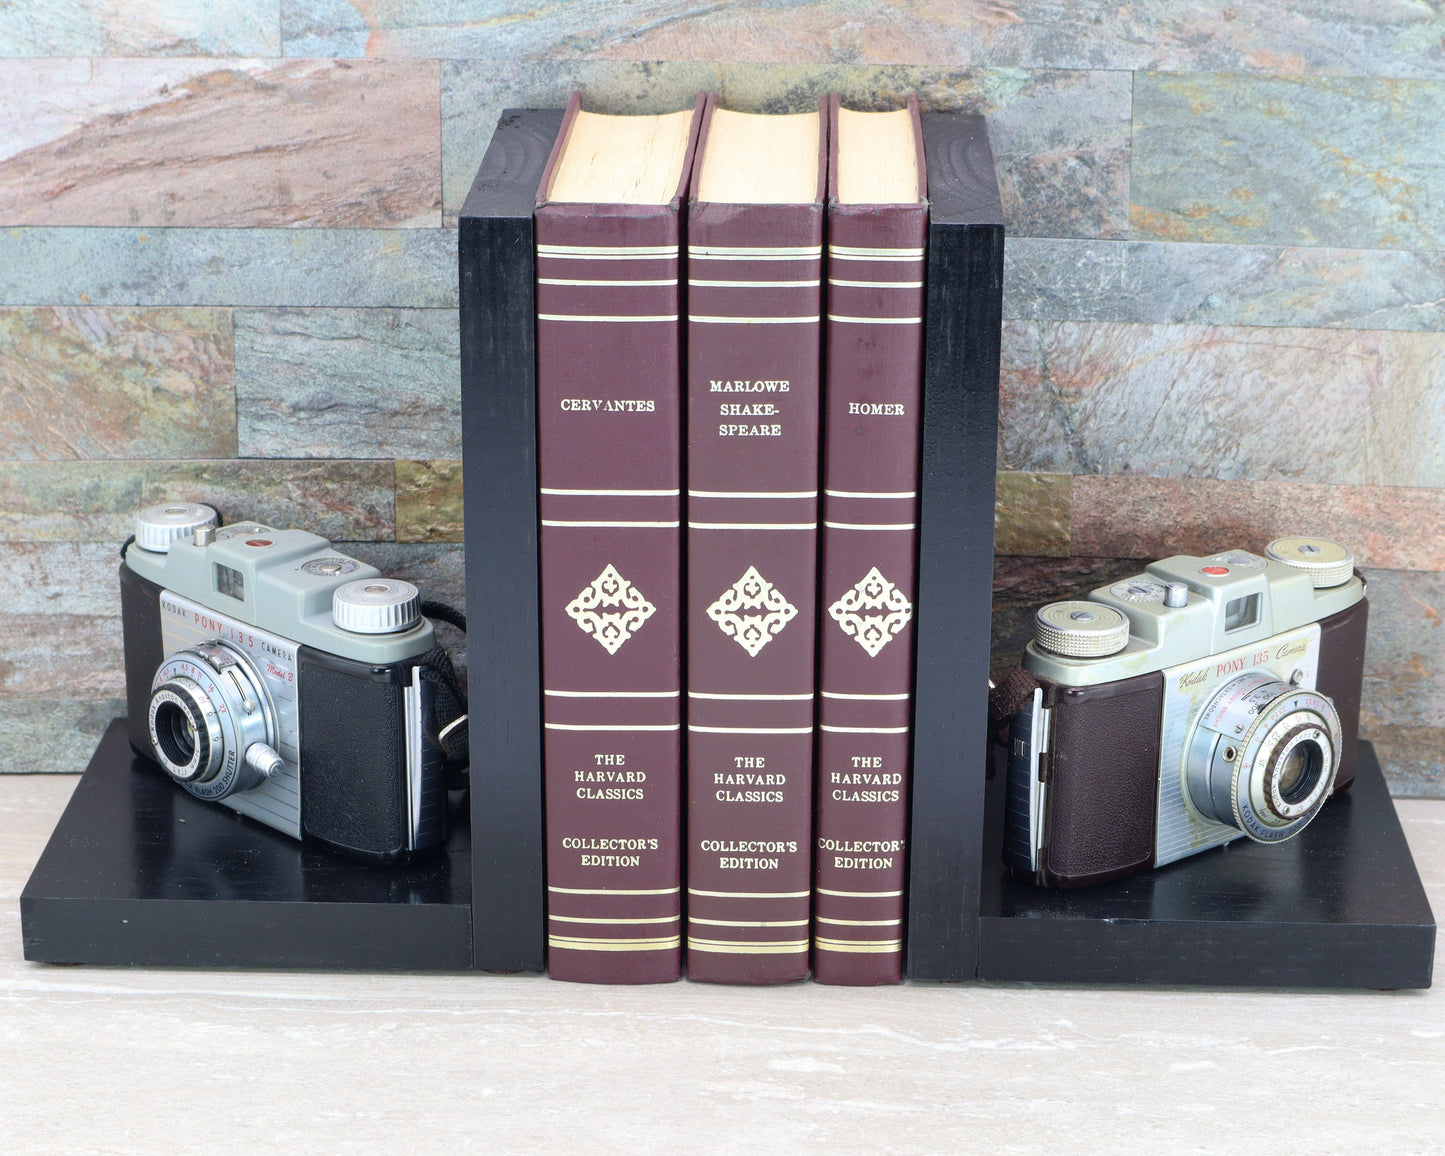 LightAndTimeArt Bookends 2 Kodak Pony Cameras, Antique Vintage Wooden Decorative Bookends, DVD Holder, Movie Room Décor, Movie Maker, Director & Actor Gift